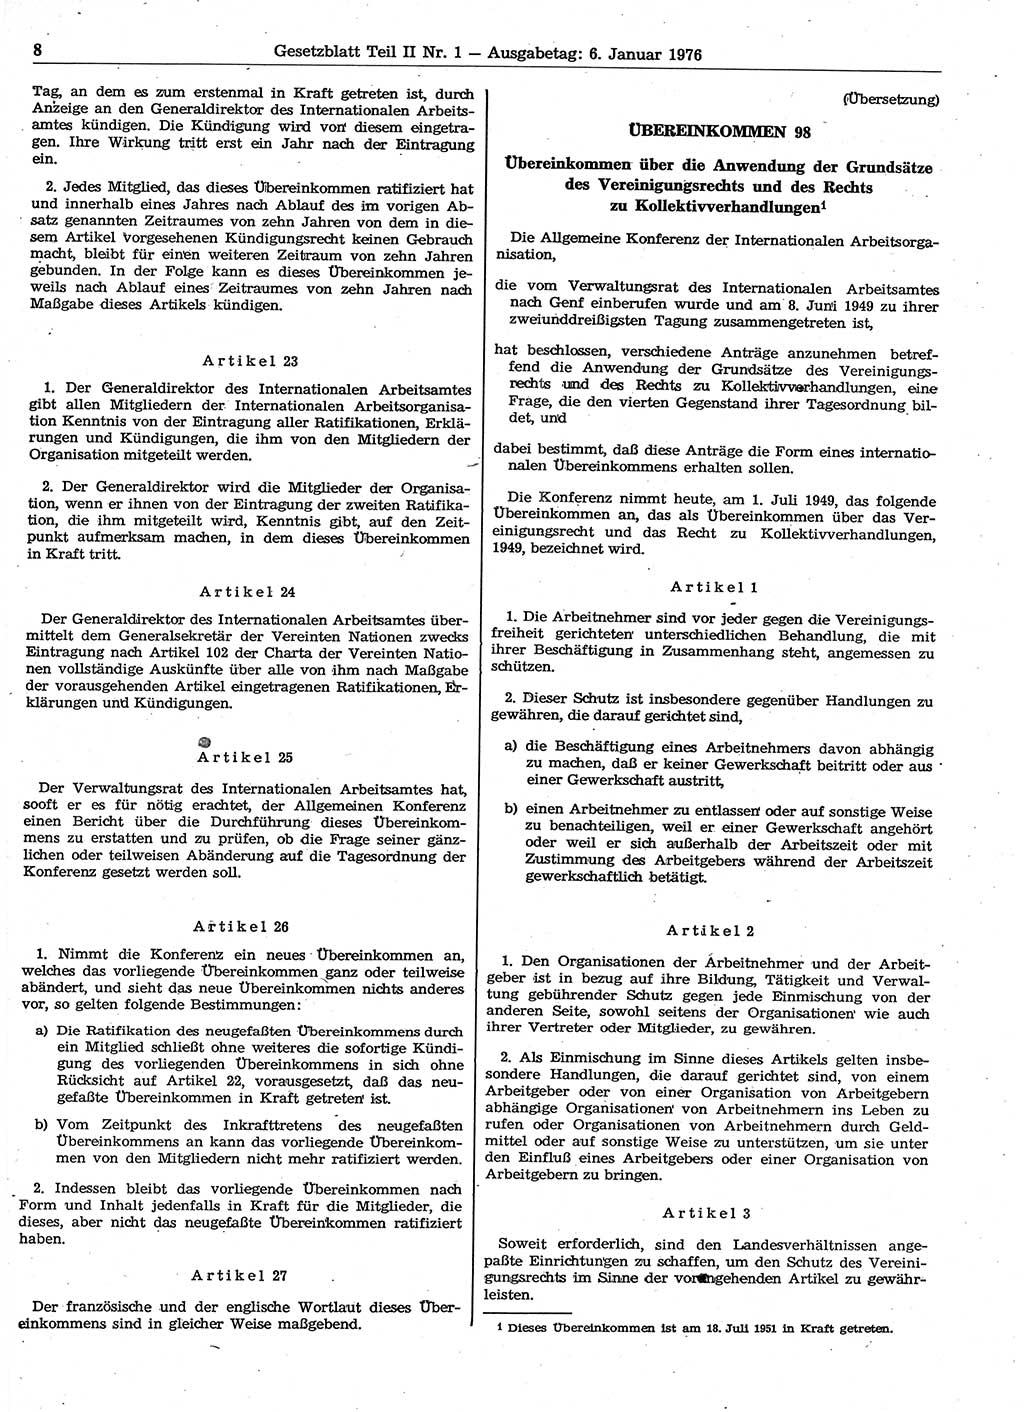 Gesetzblatt (GBl.) der Deutschen Demokratischen Republik (DDR) Teil ⅠⅠ 1976, Seite 8 (GBl. DDR ⅠⅠ 1976, S. 8)